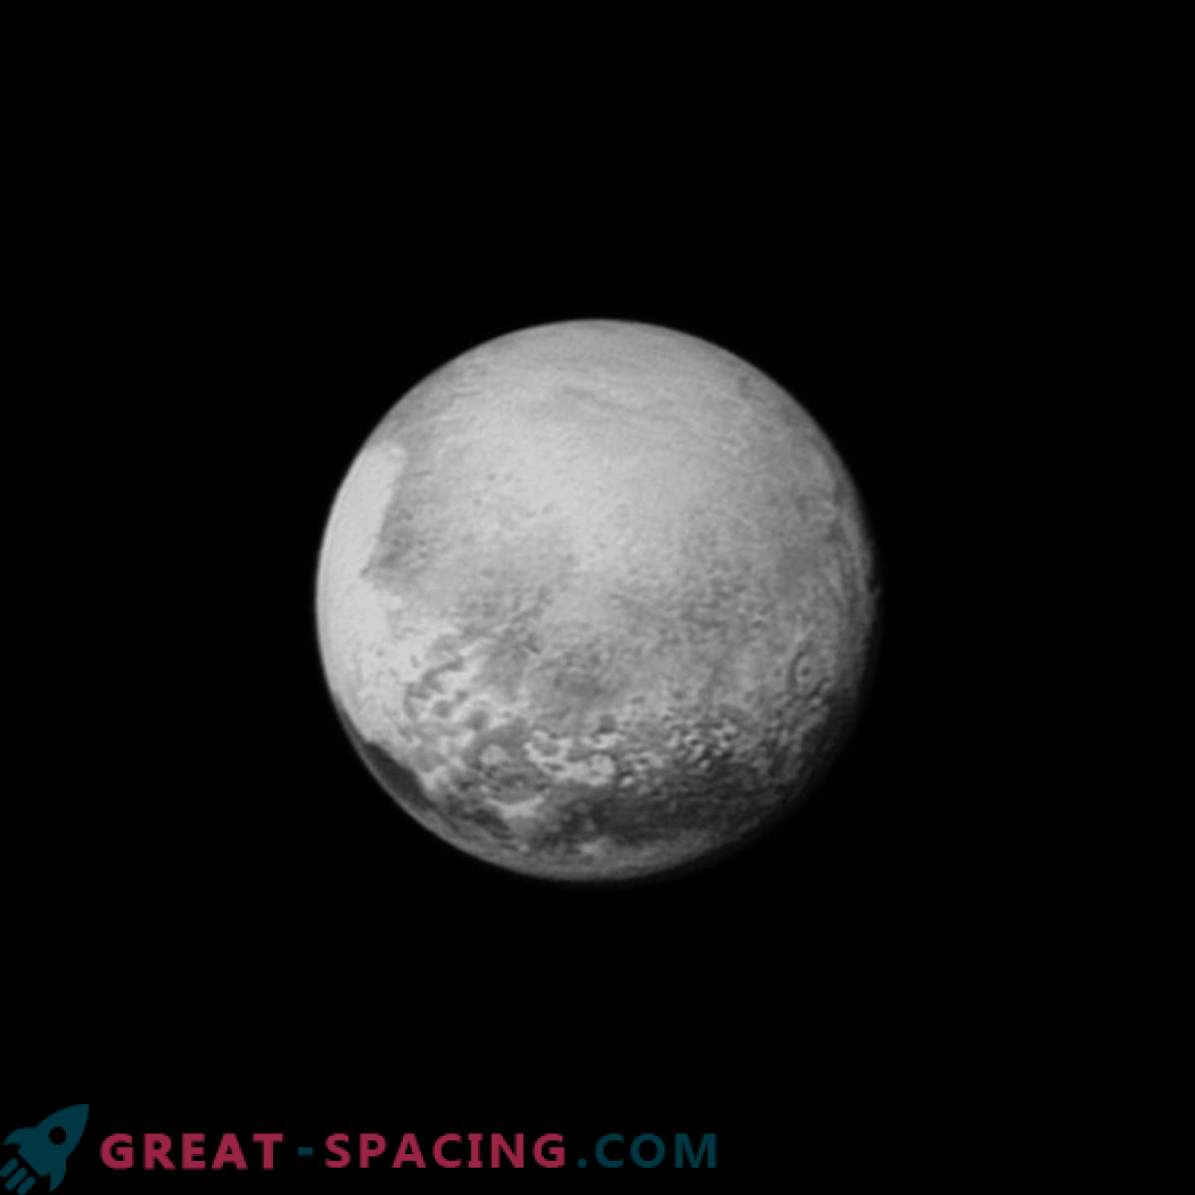 La sonde New Horizon de la NASA a réussi à répondre à l’une des principales questions: quelle est la taille de Pluton?